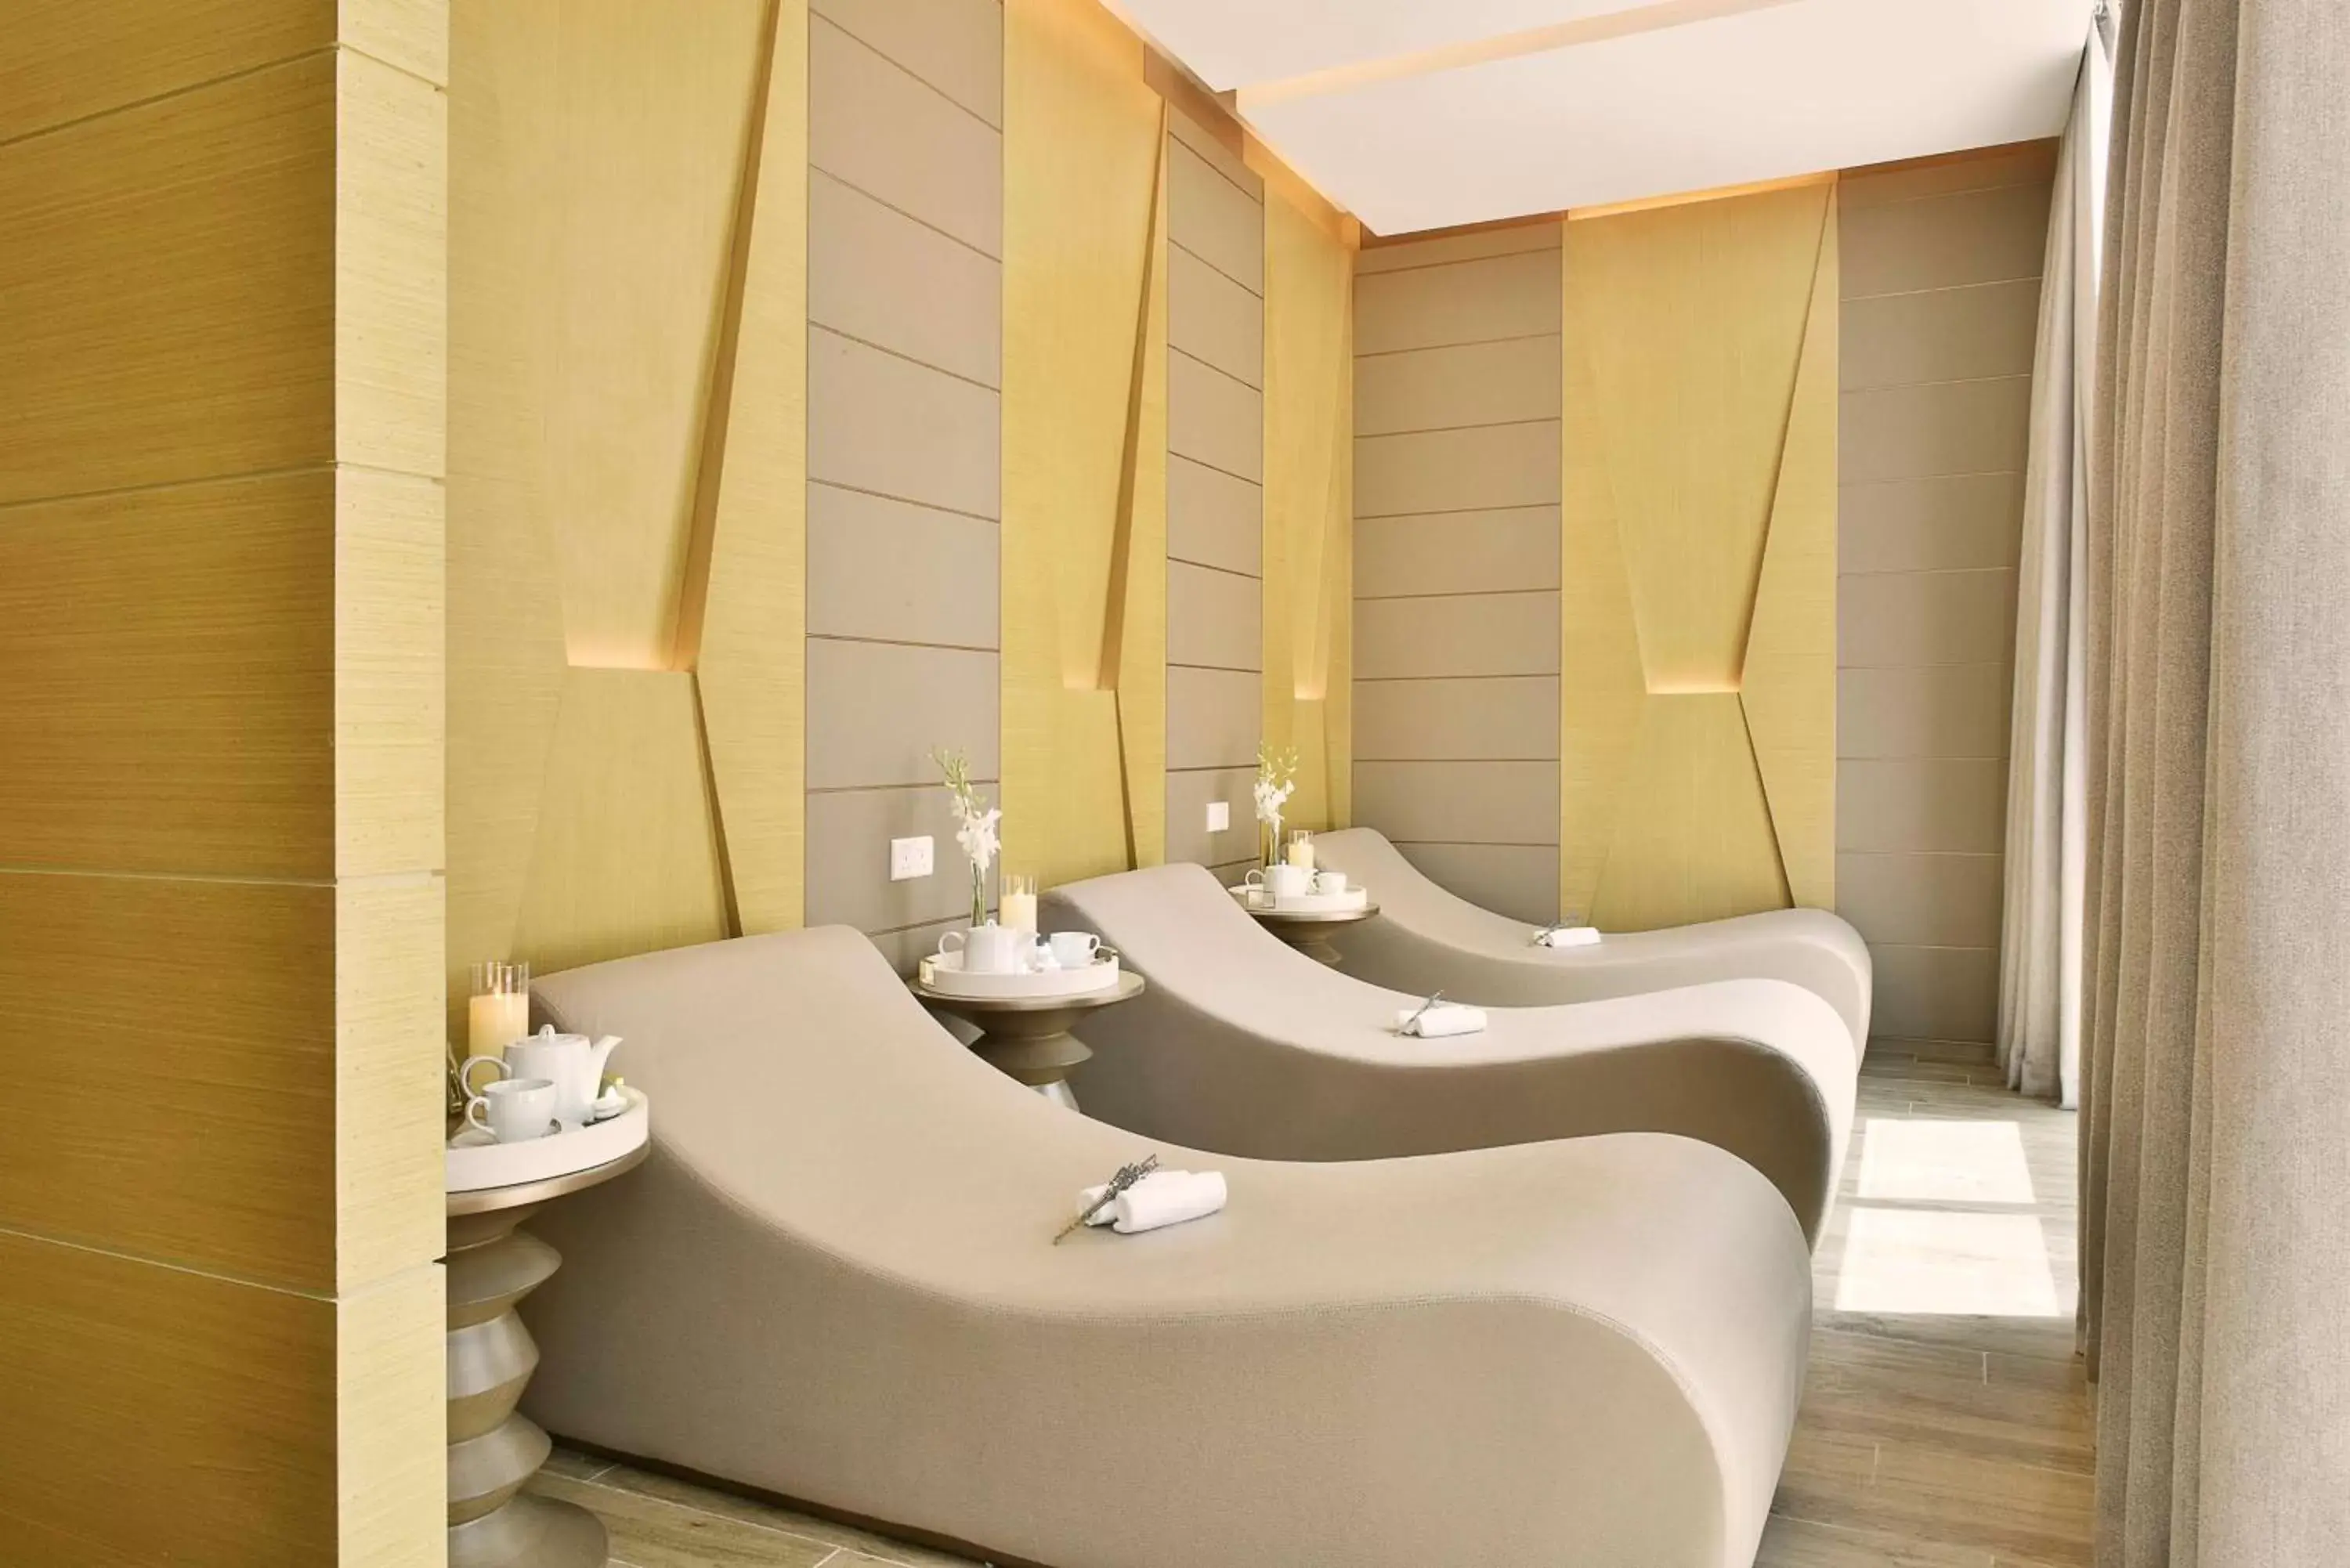 Spa and wellness centre/facilities, Bathroom in Hilton Bahrain